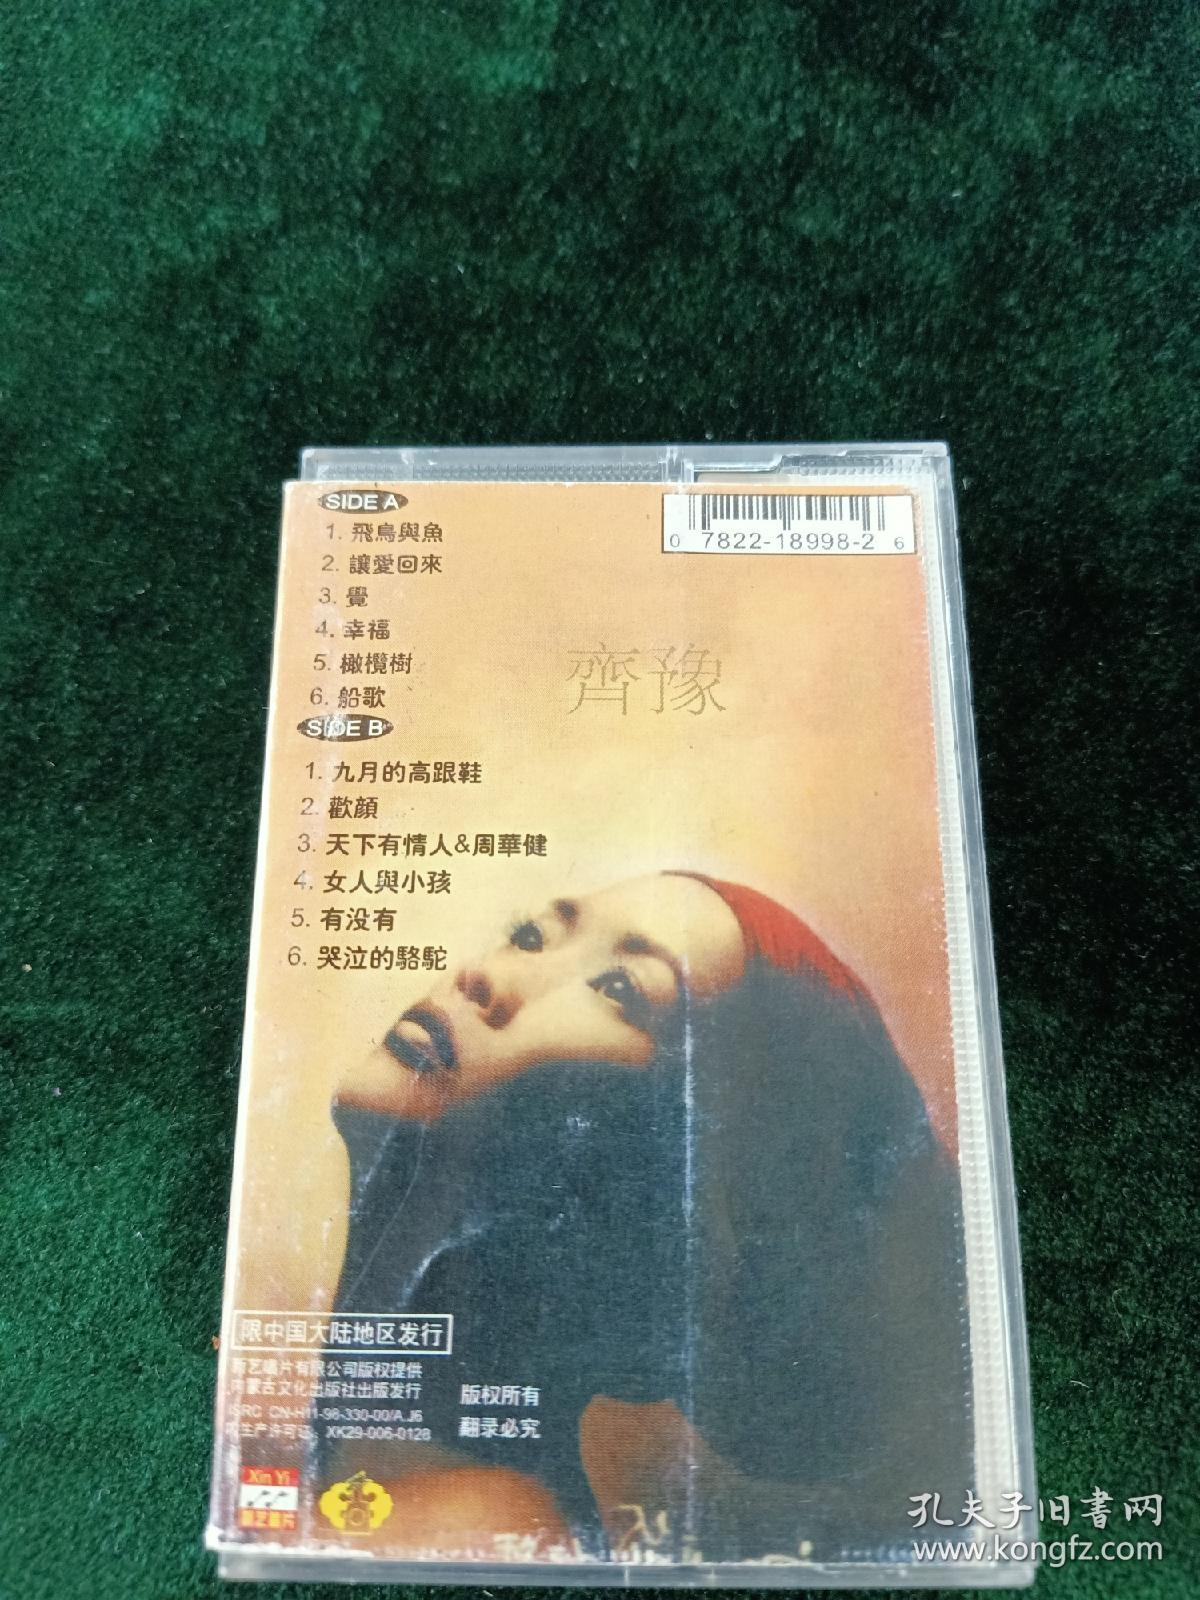 《齐豫最新专辑 骆驼 飞鸟与鱼》磁带，新艺唱片供版，内蒙古音像出版